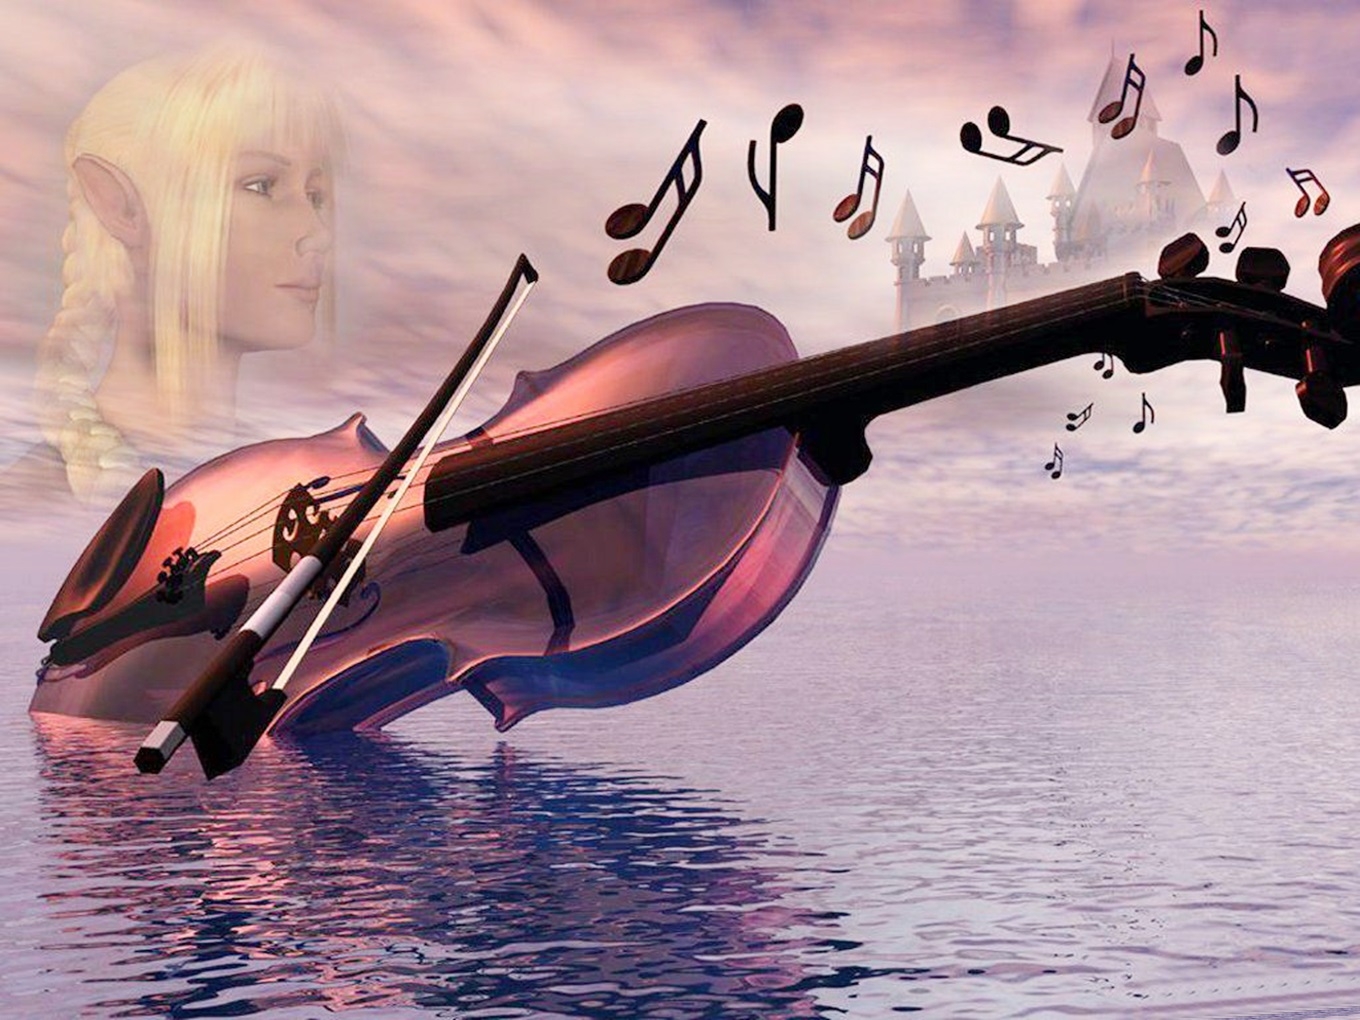 Песни от всей души 22. Скрипка. Скрипка и море. Волшебная скрипка. Скрипка и небо.